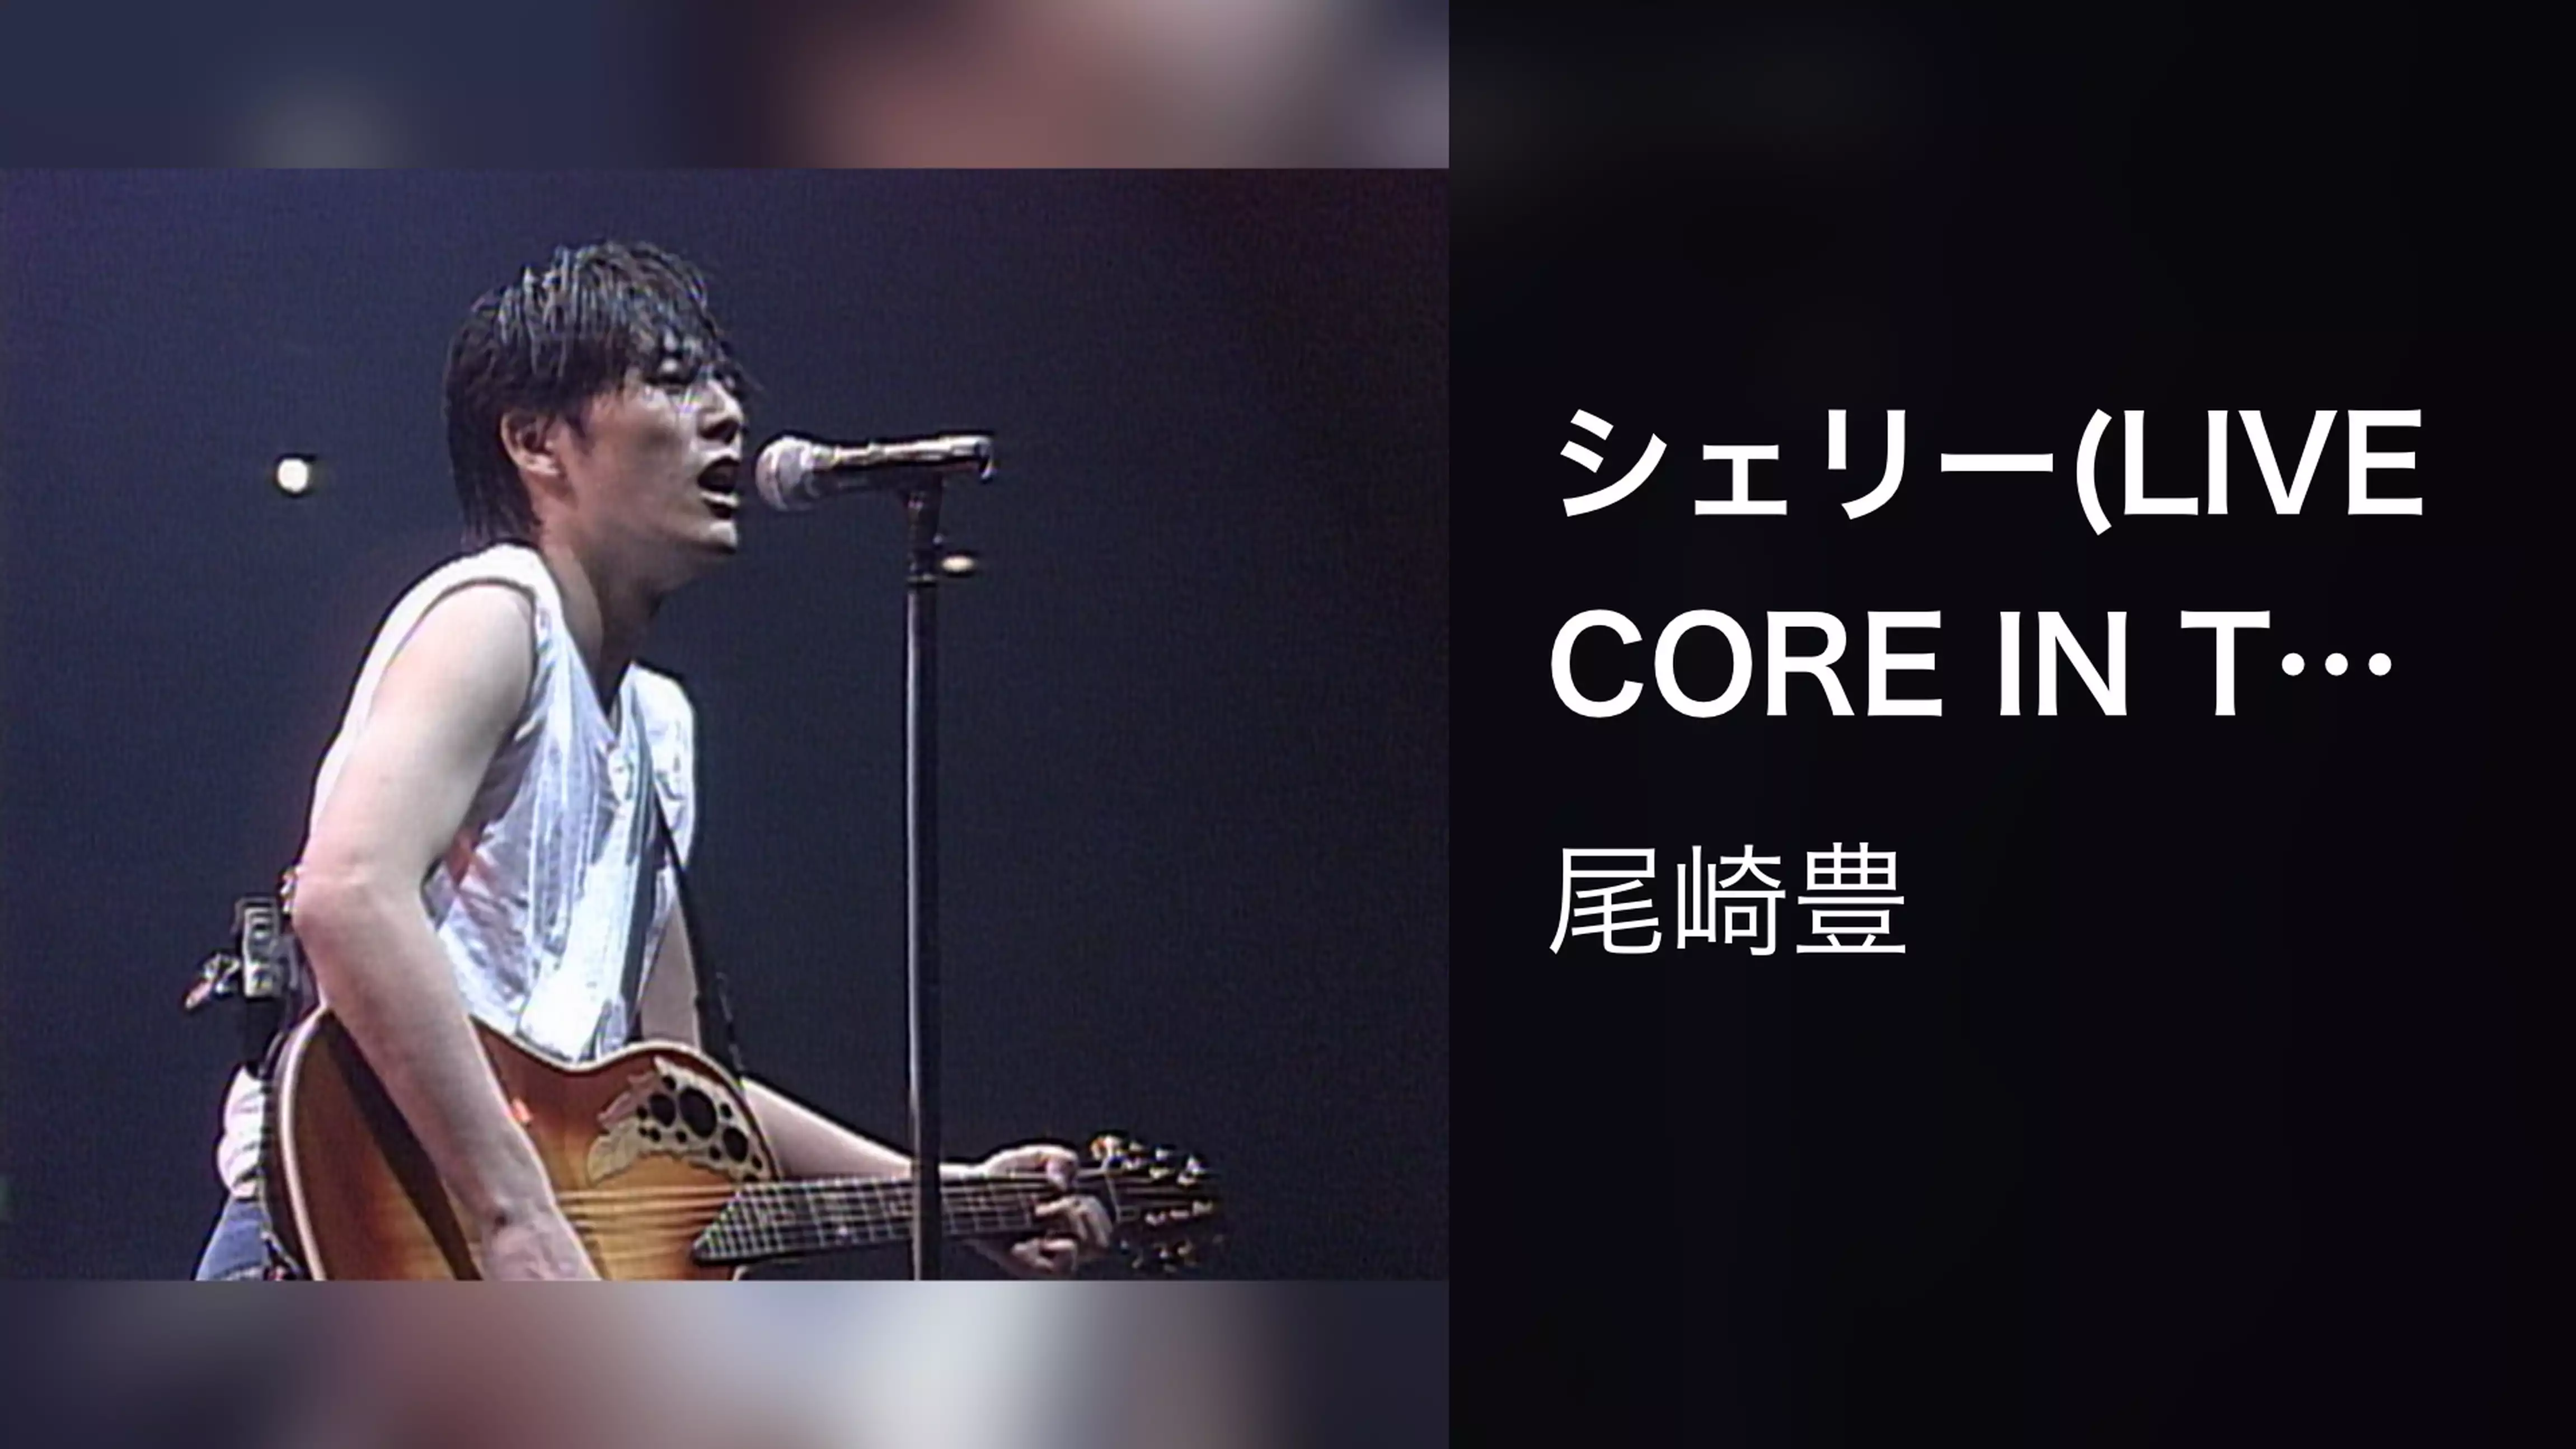 シェリー(LIVE CORE IN TOKYO DOME 1988・9・12)